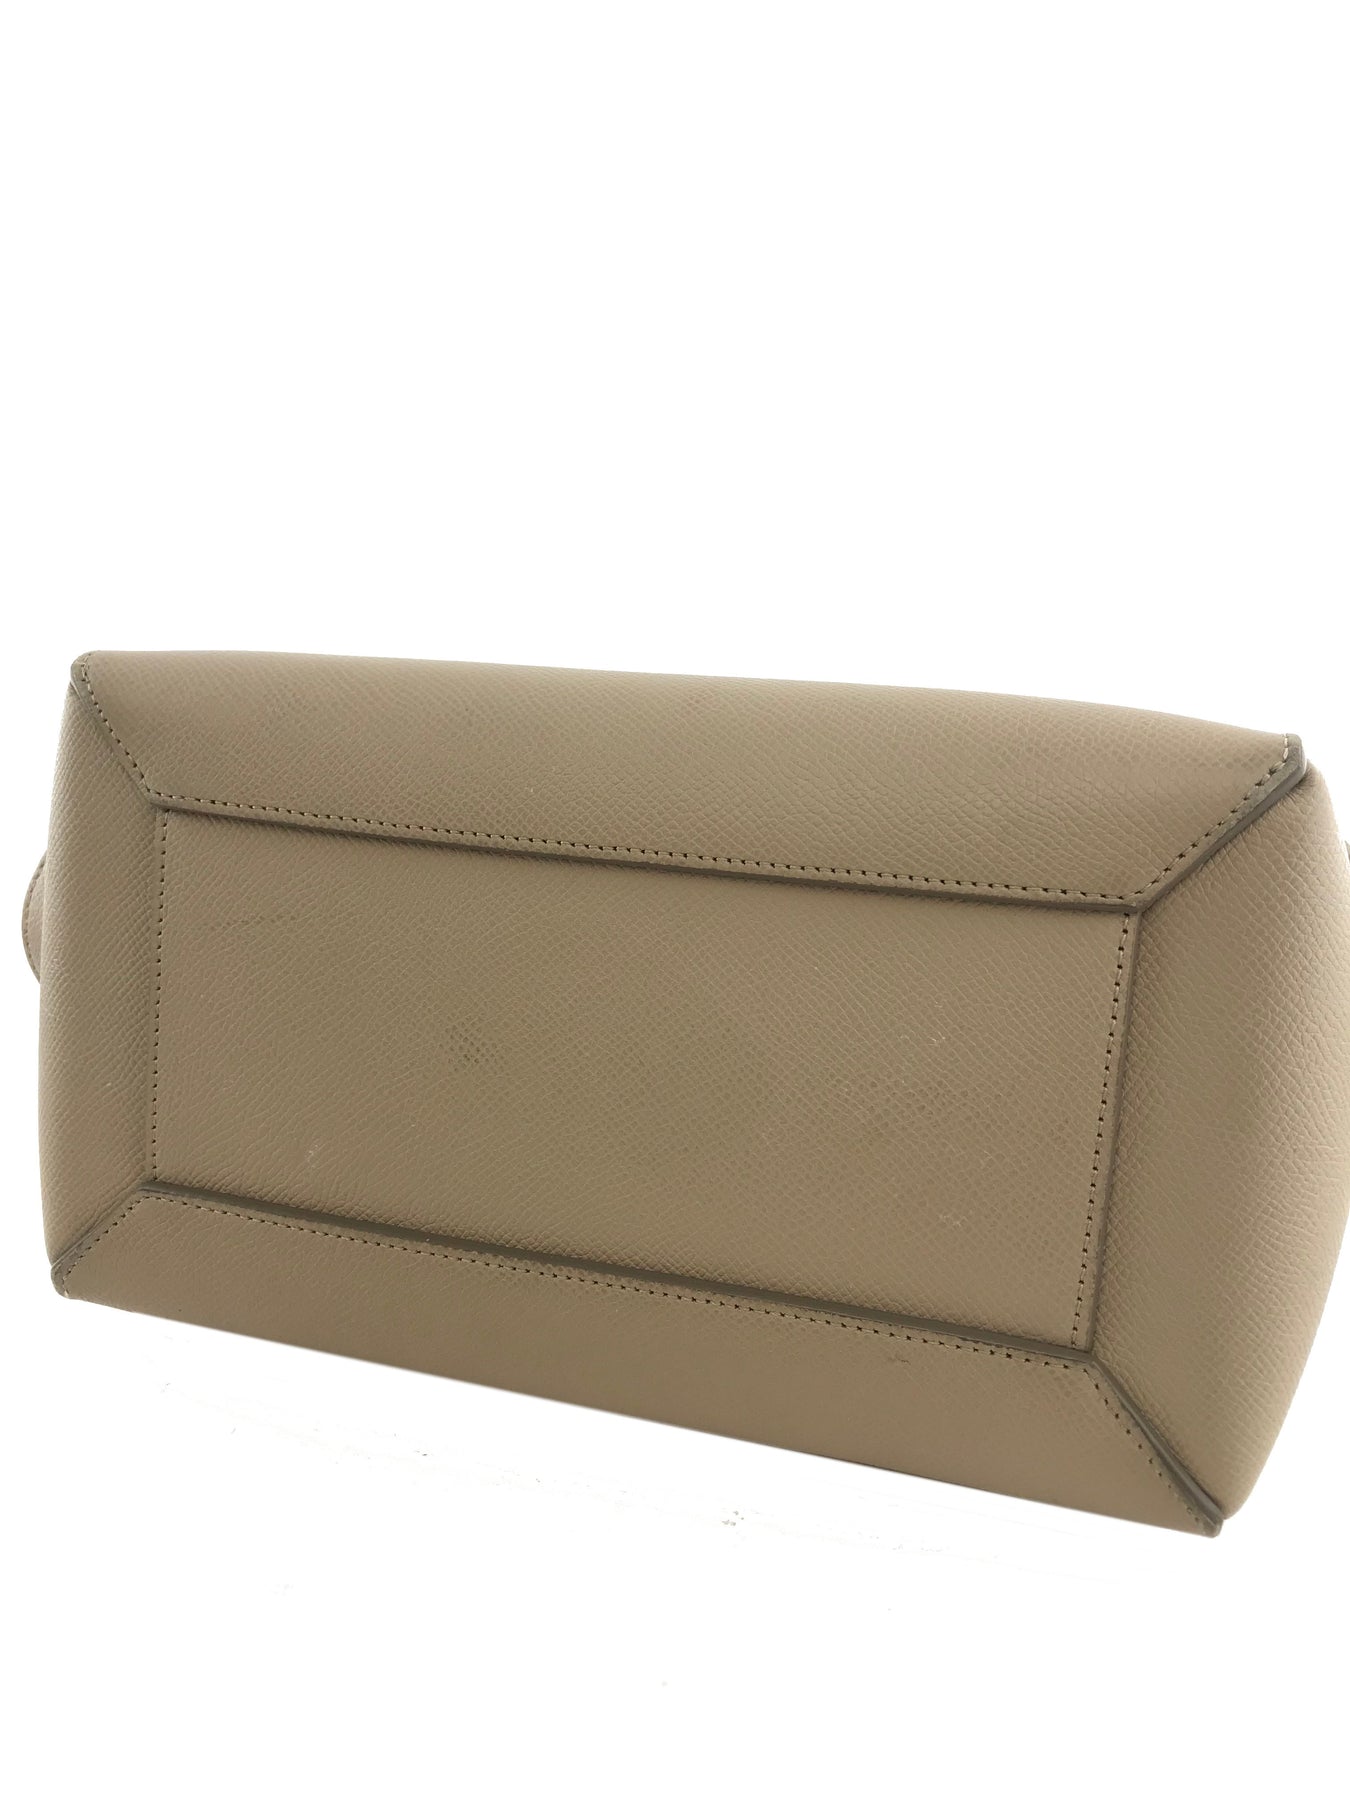 Celine Micro Belt Bag - Consigned Designs